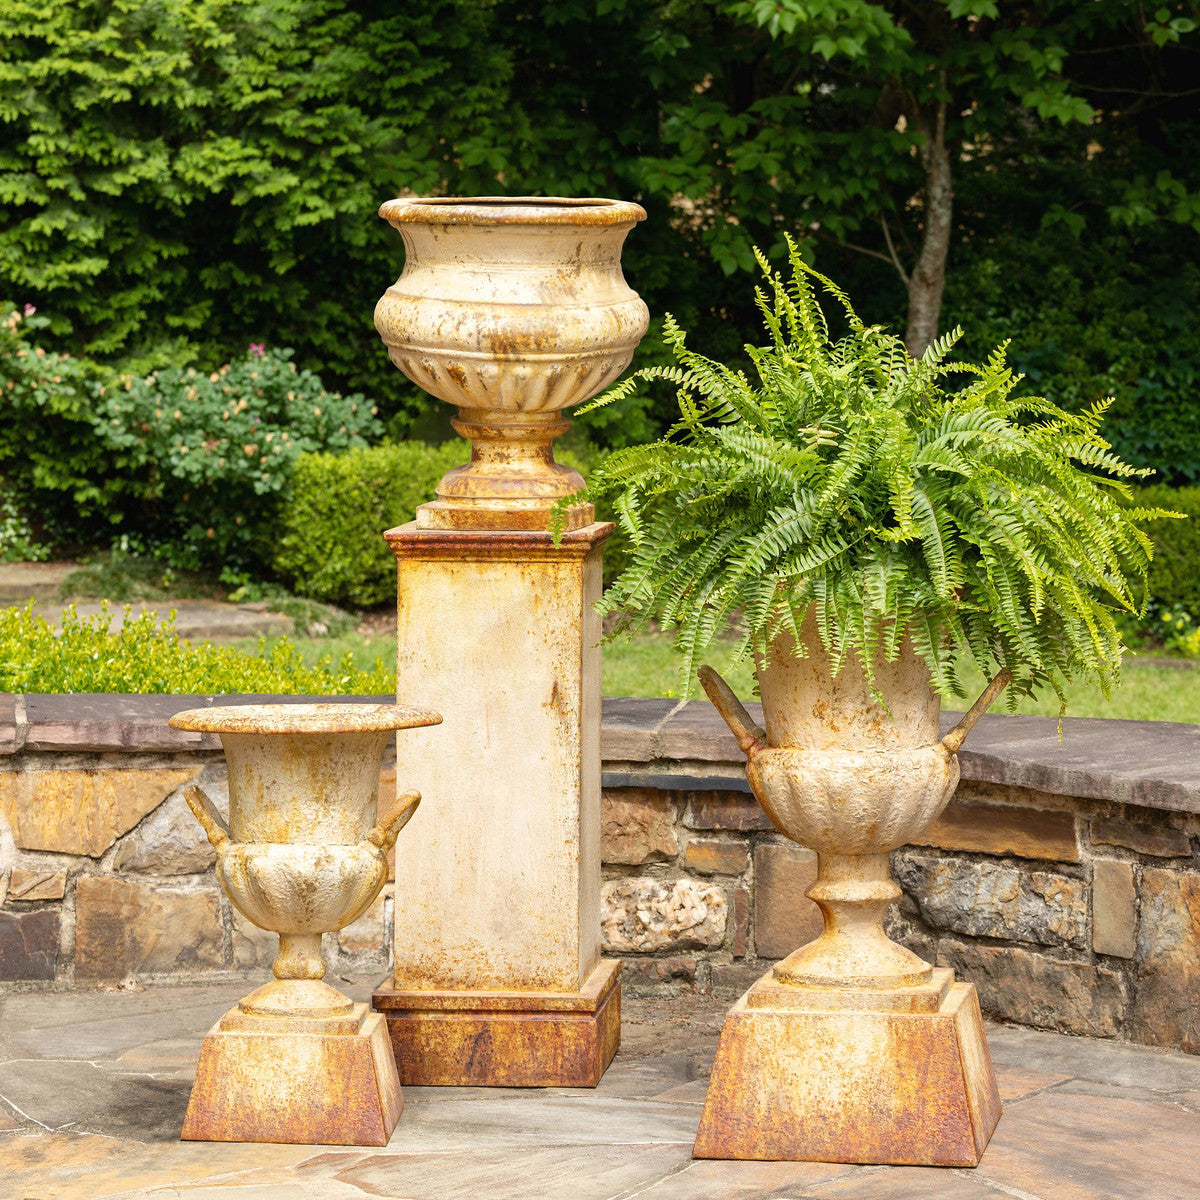 Grecian Urn With Pedestal, Restoration Hardware Garden Urns